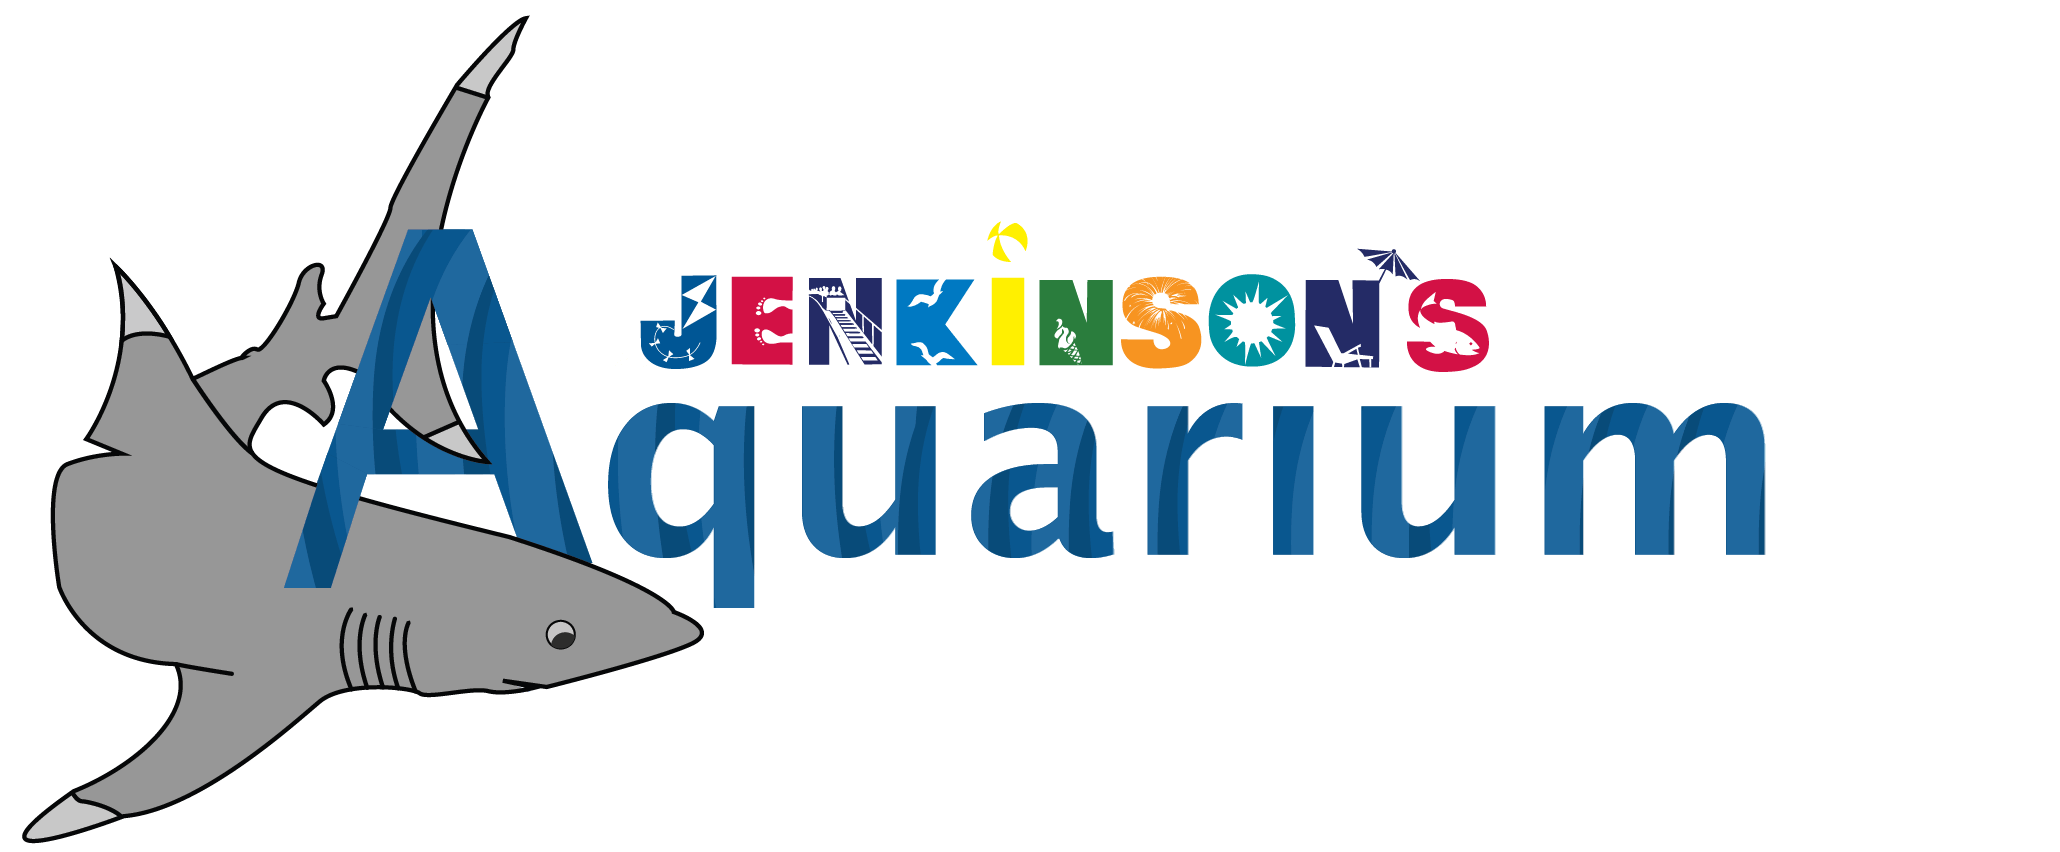 aquarium-logo